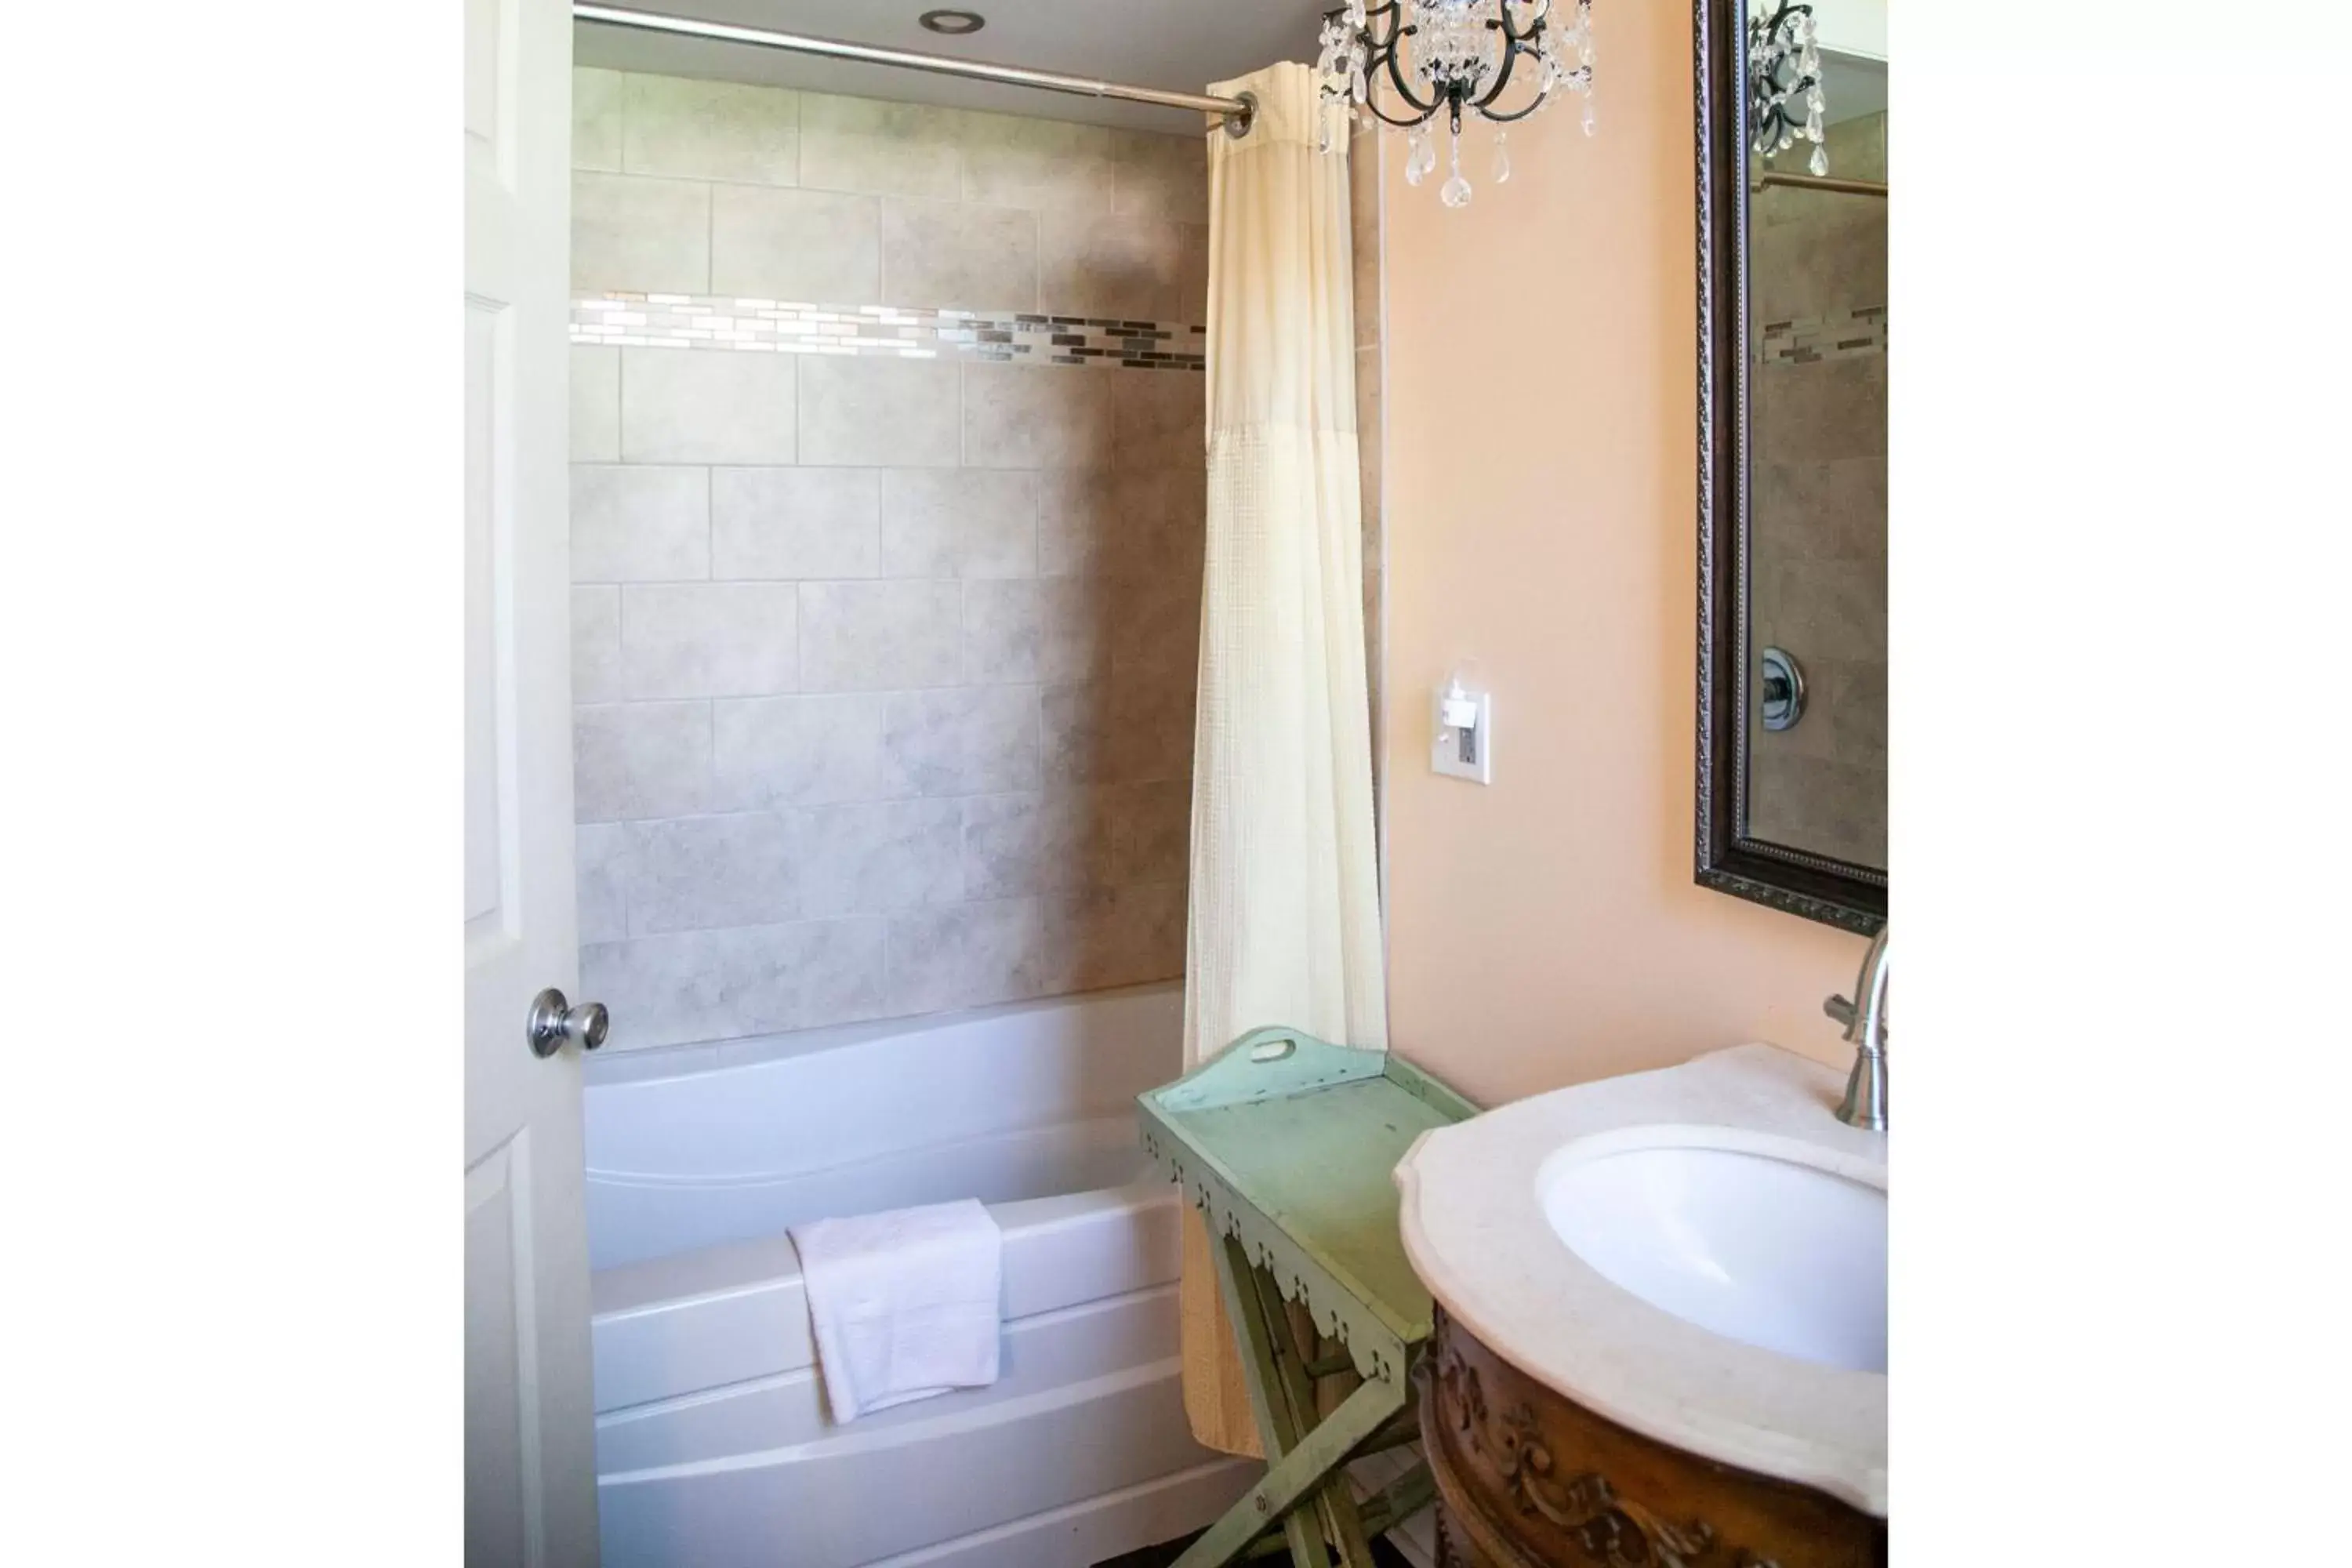 Bathroom in Tybee Island Inn Bed & Breakfast